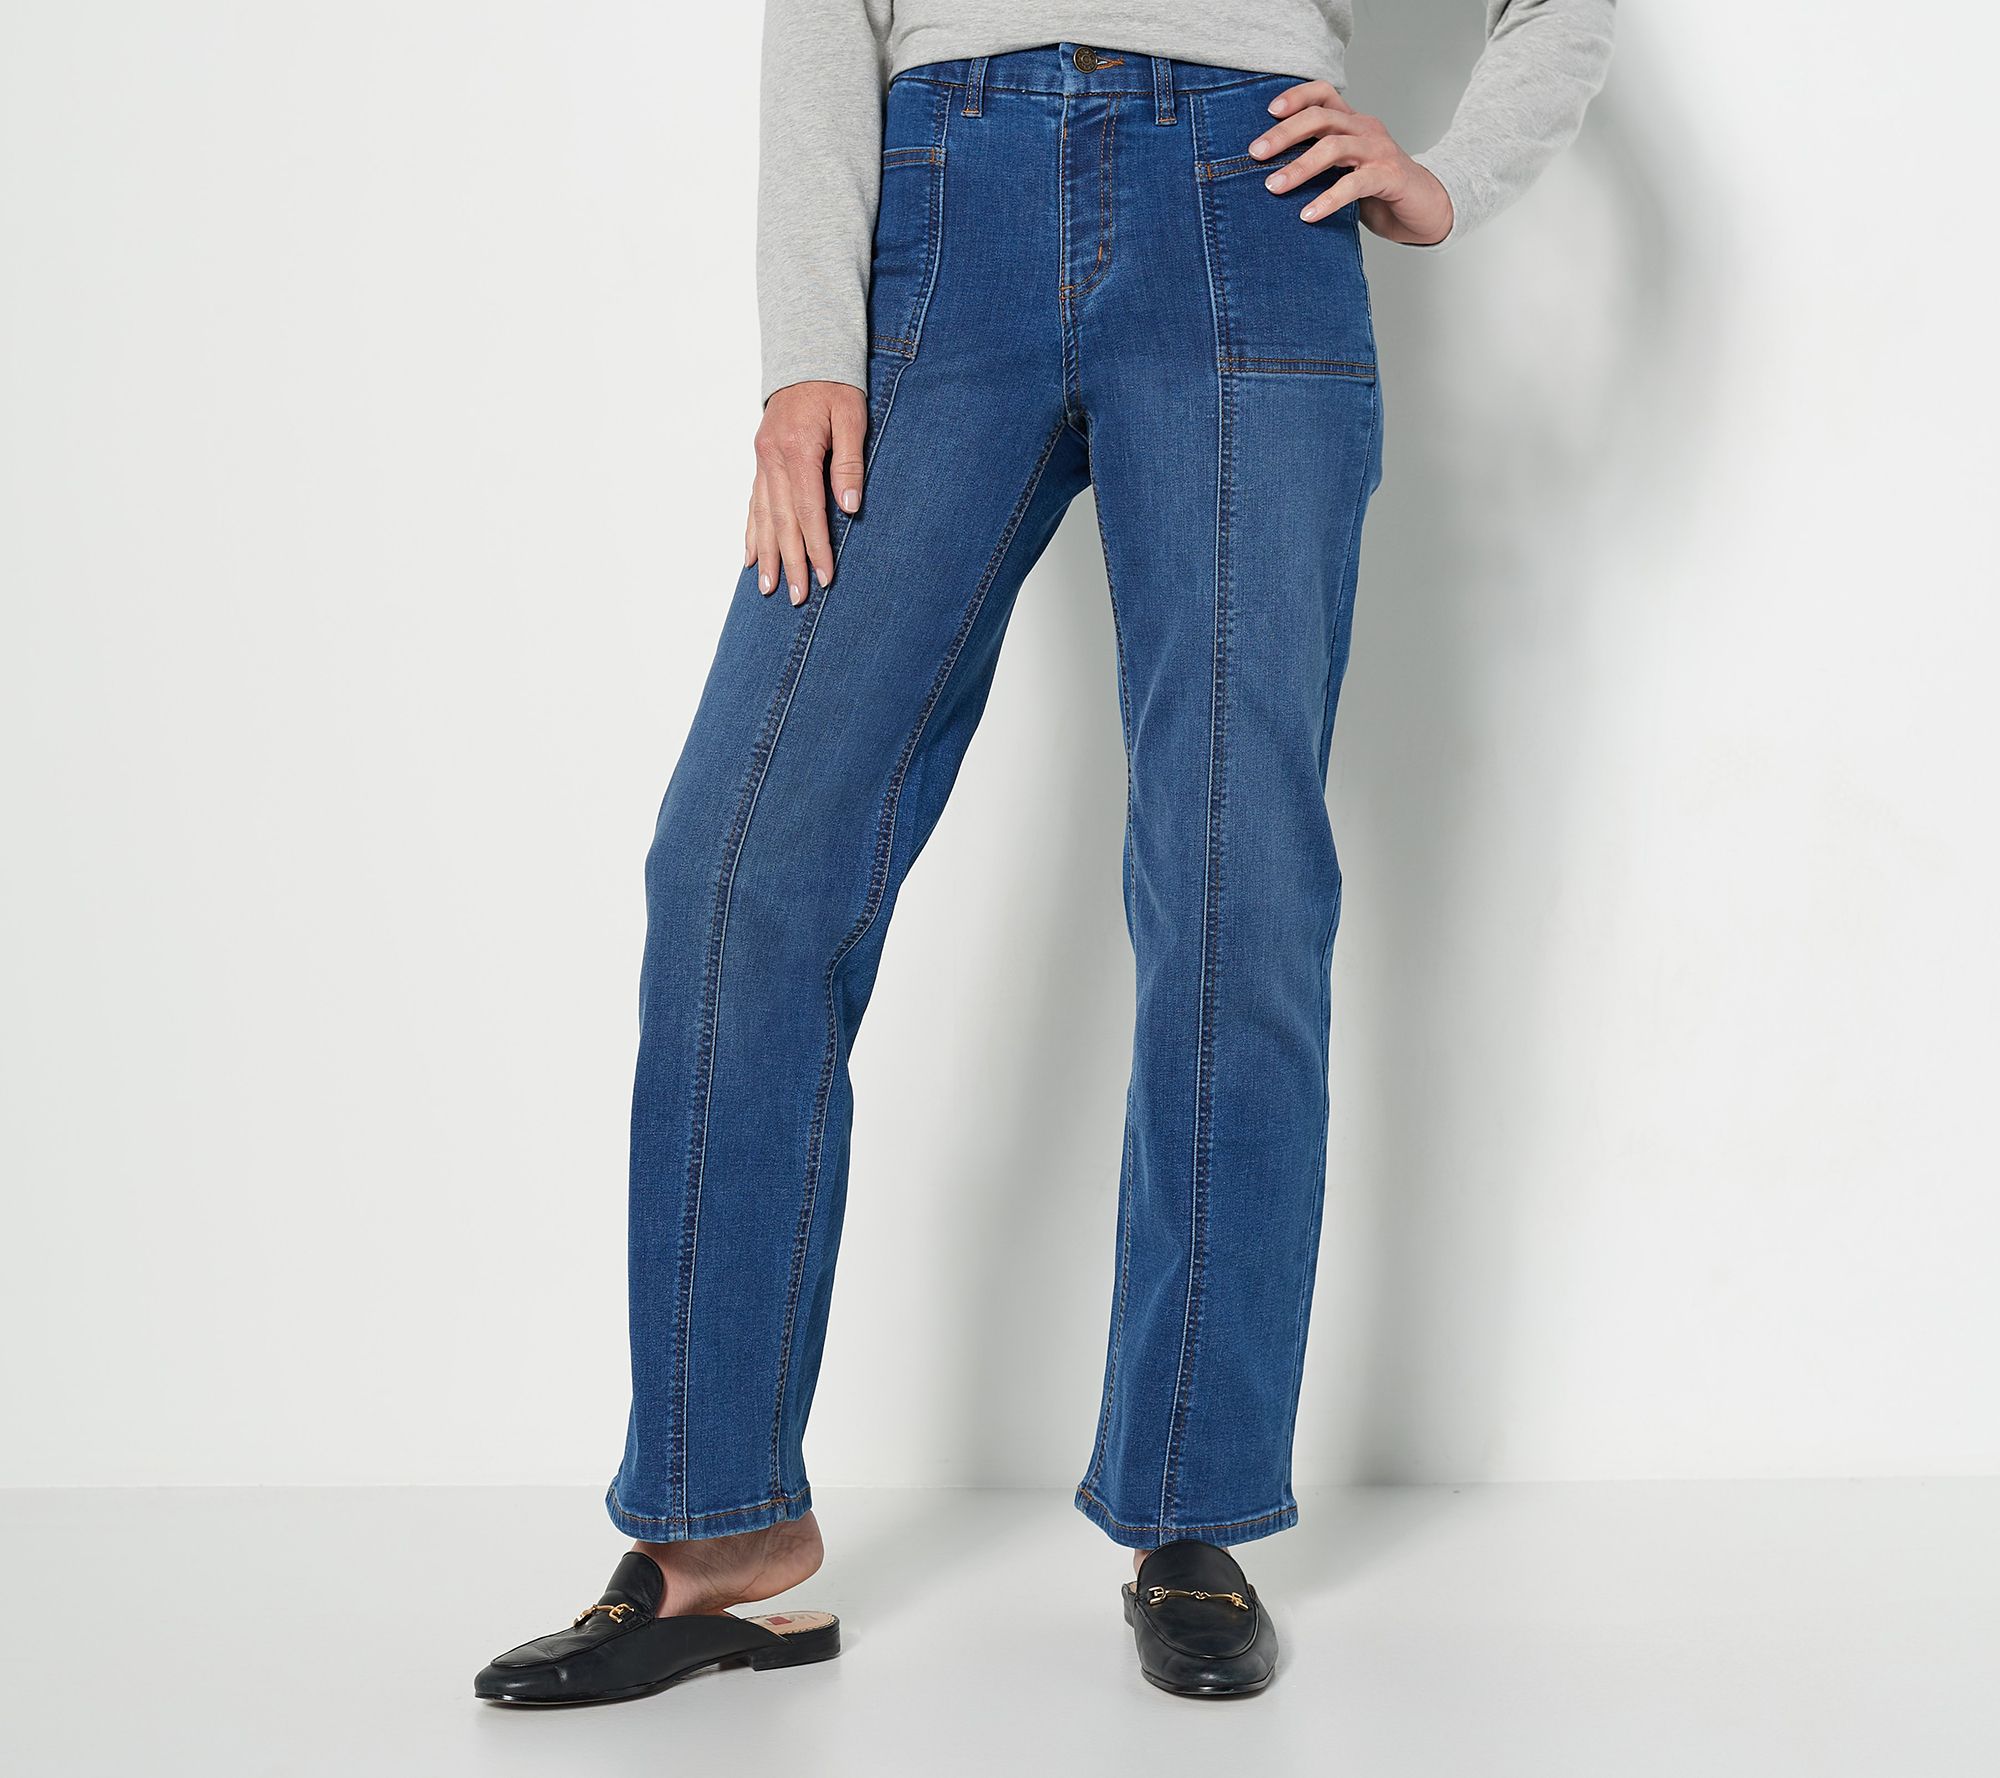 Women's Petite Wide Leg Jeans: Denim